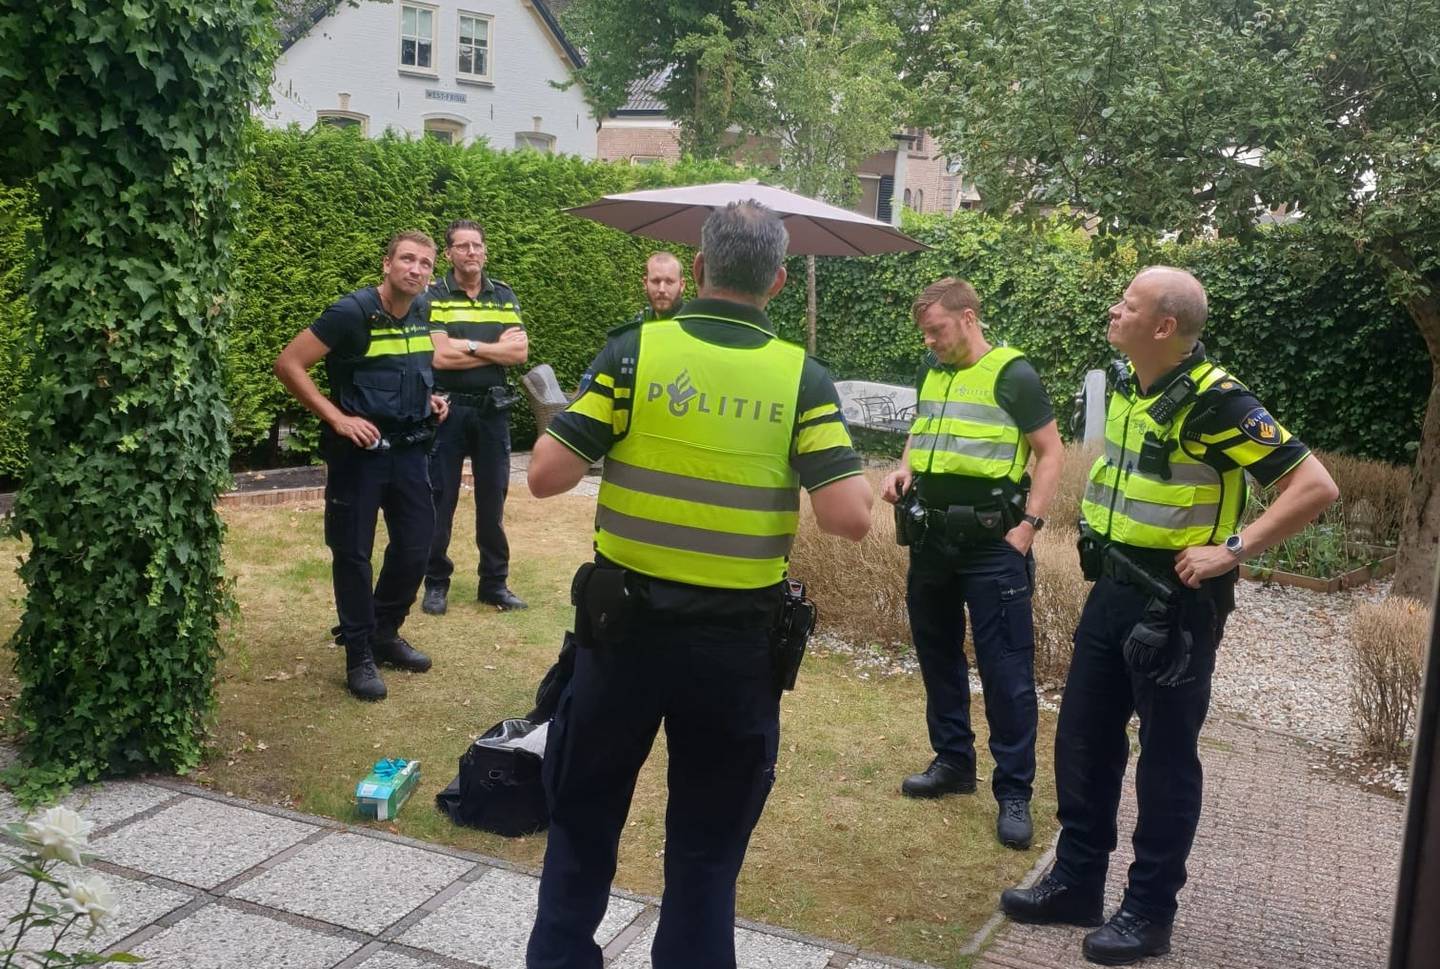 INNBRUDD: En nederlandsk politimann innrømmer å ha spanet på Ben van Wijhe, tidligere medlem av Brunstad Christian Church. I august, kort tid etter spaningen, van Wijhe overfalt i sitt eget hjem og frastjålet laptopen sin. Bildet er fra politiets arbeid etter innbruddet.